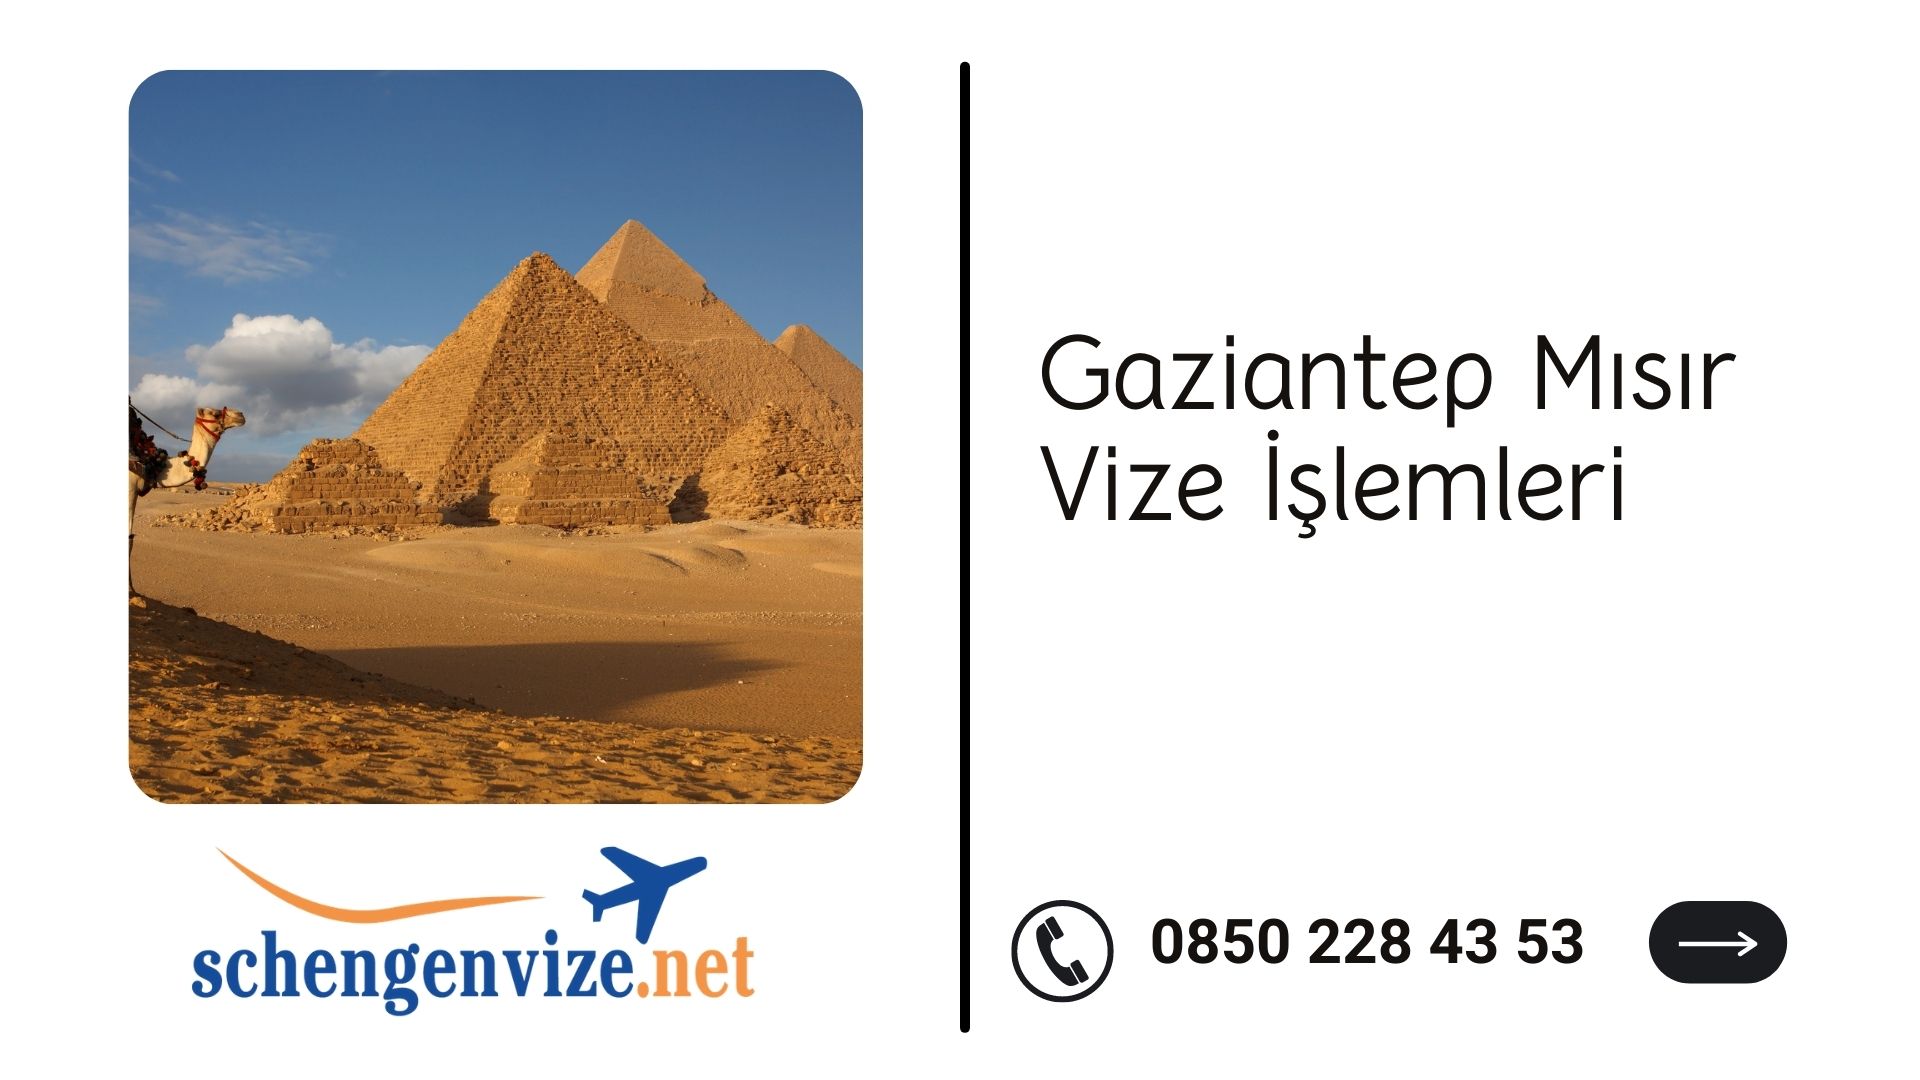 Gaziantep Mısır Vize İşlemleri